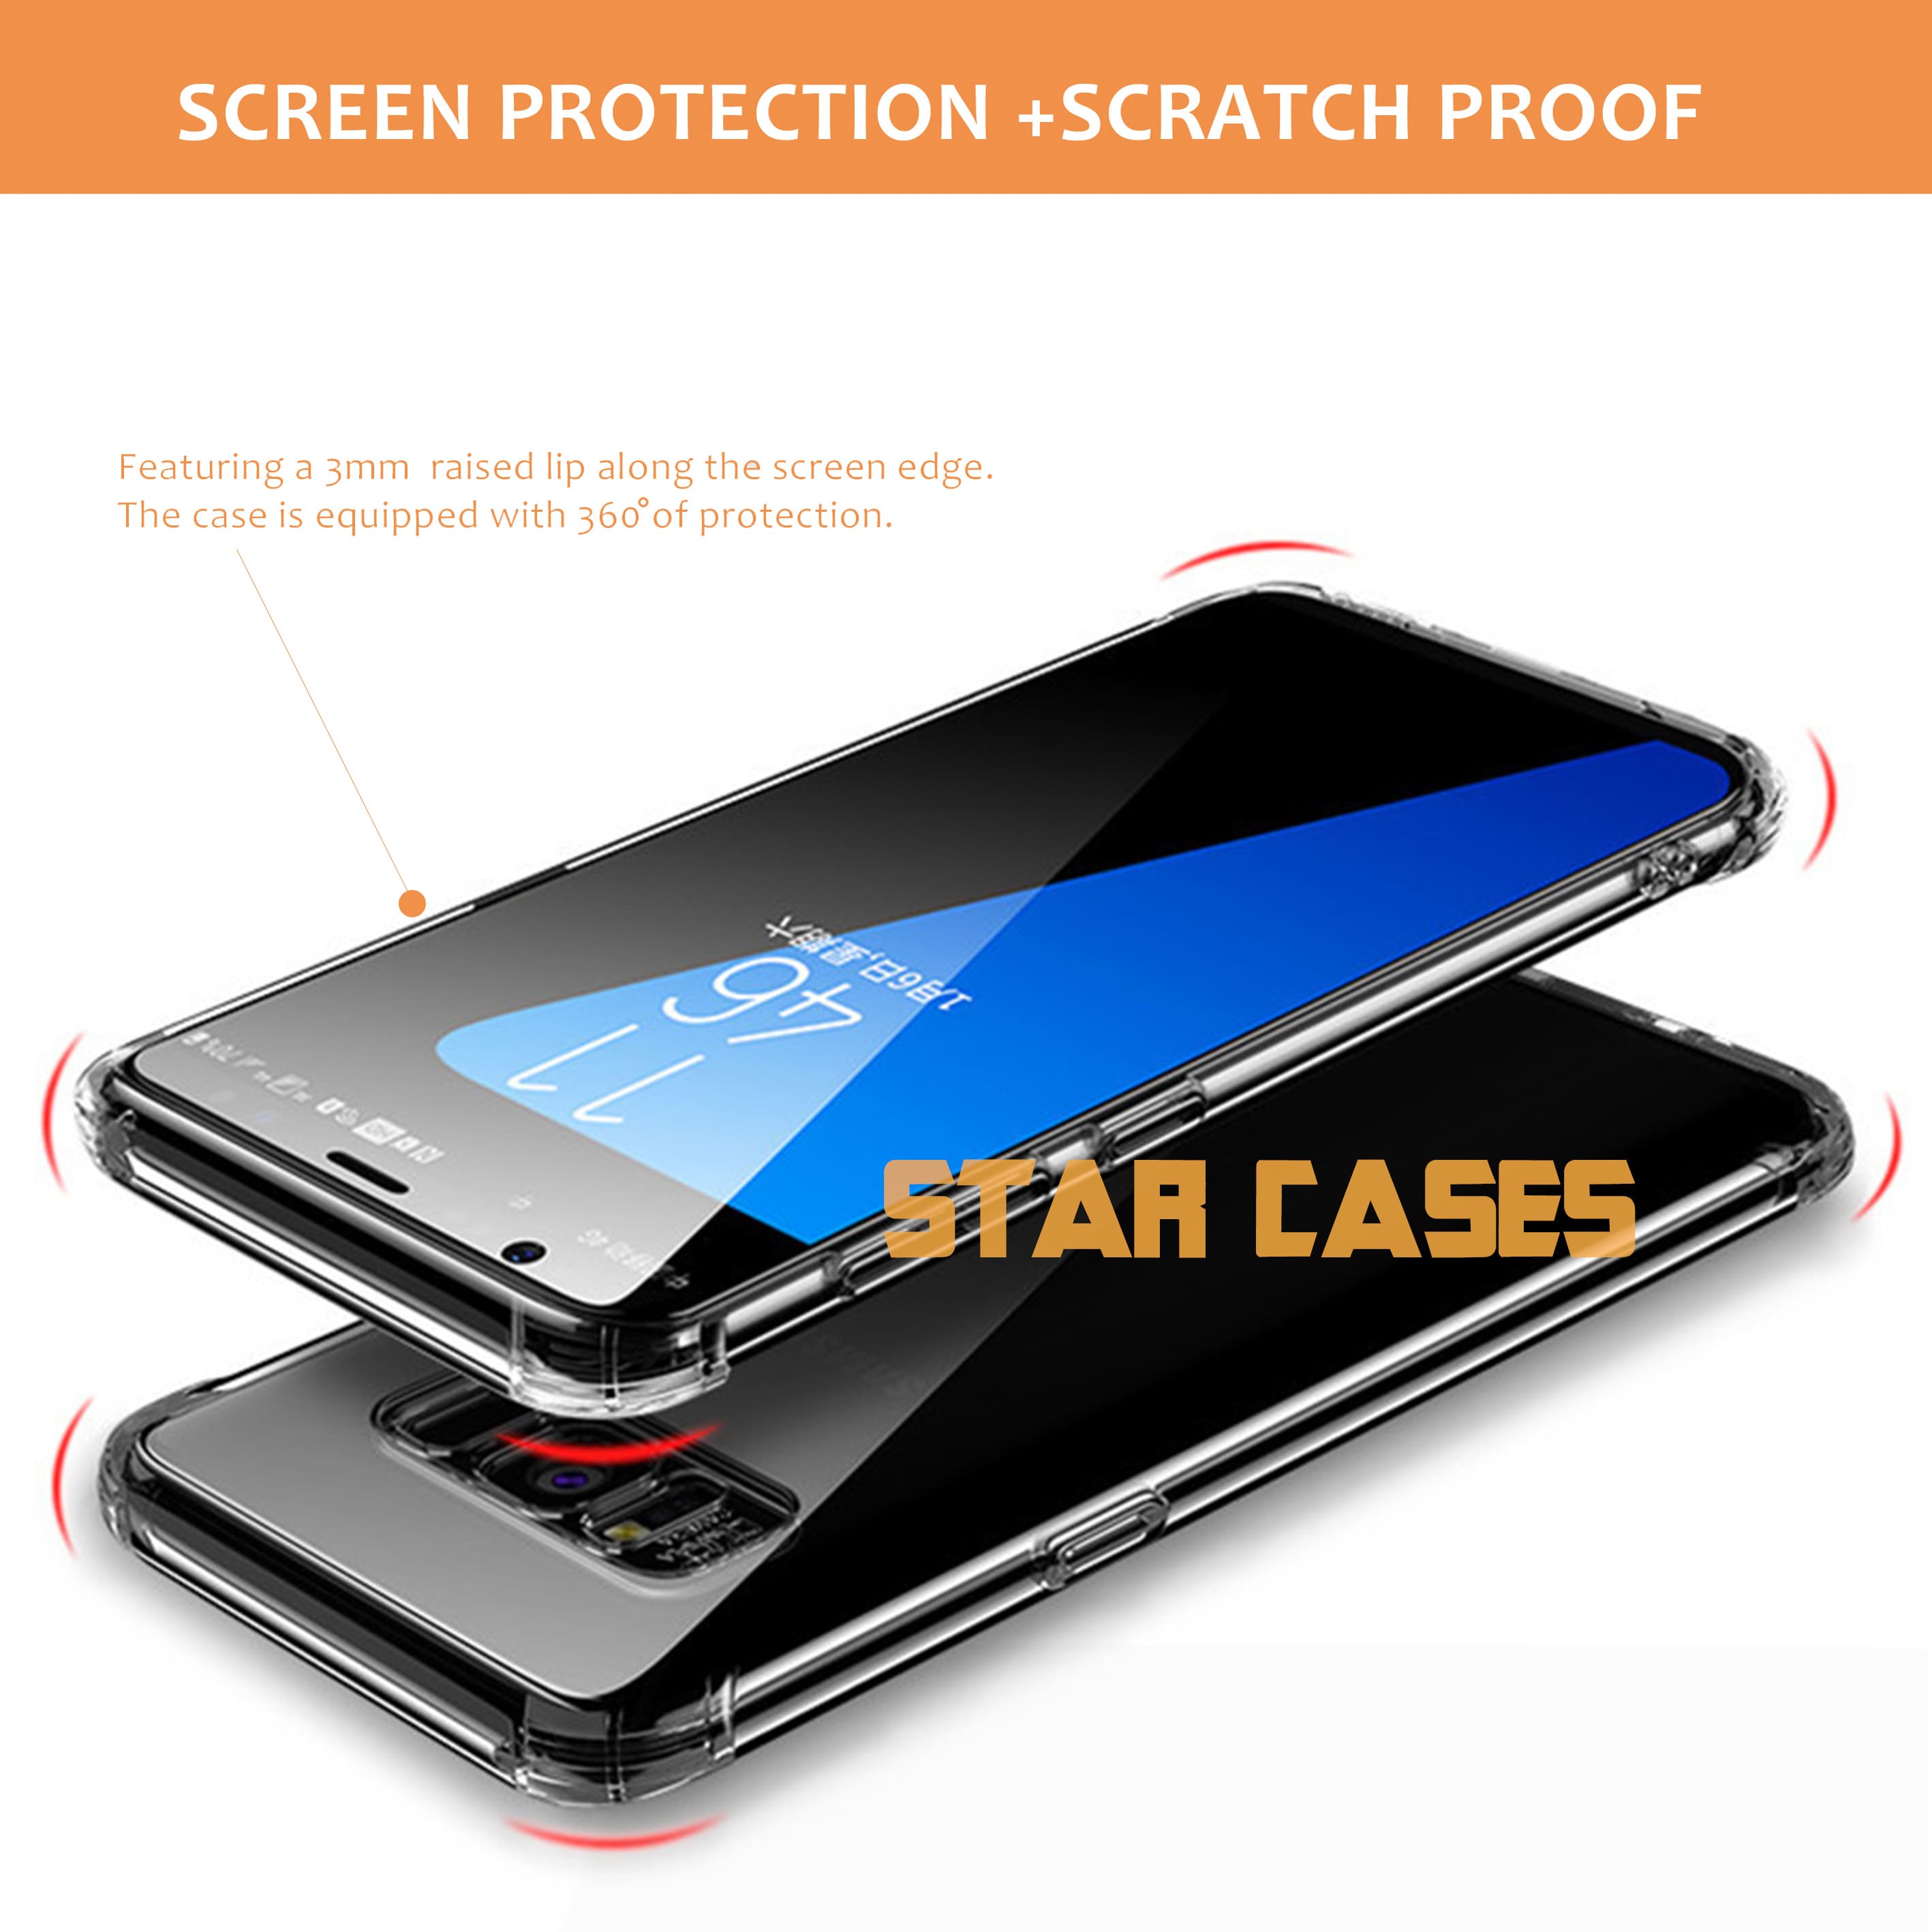 Samsung S21 Ultra Clear Soft Bumper Case